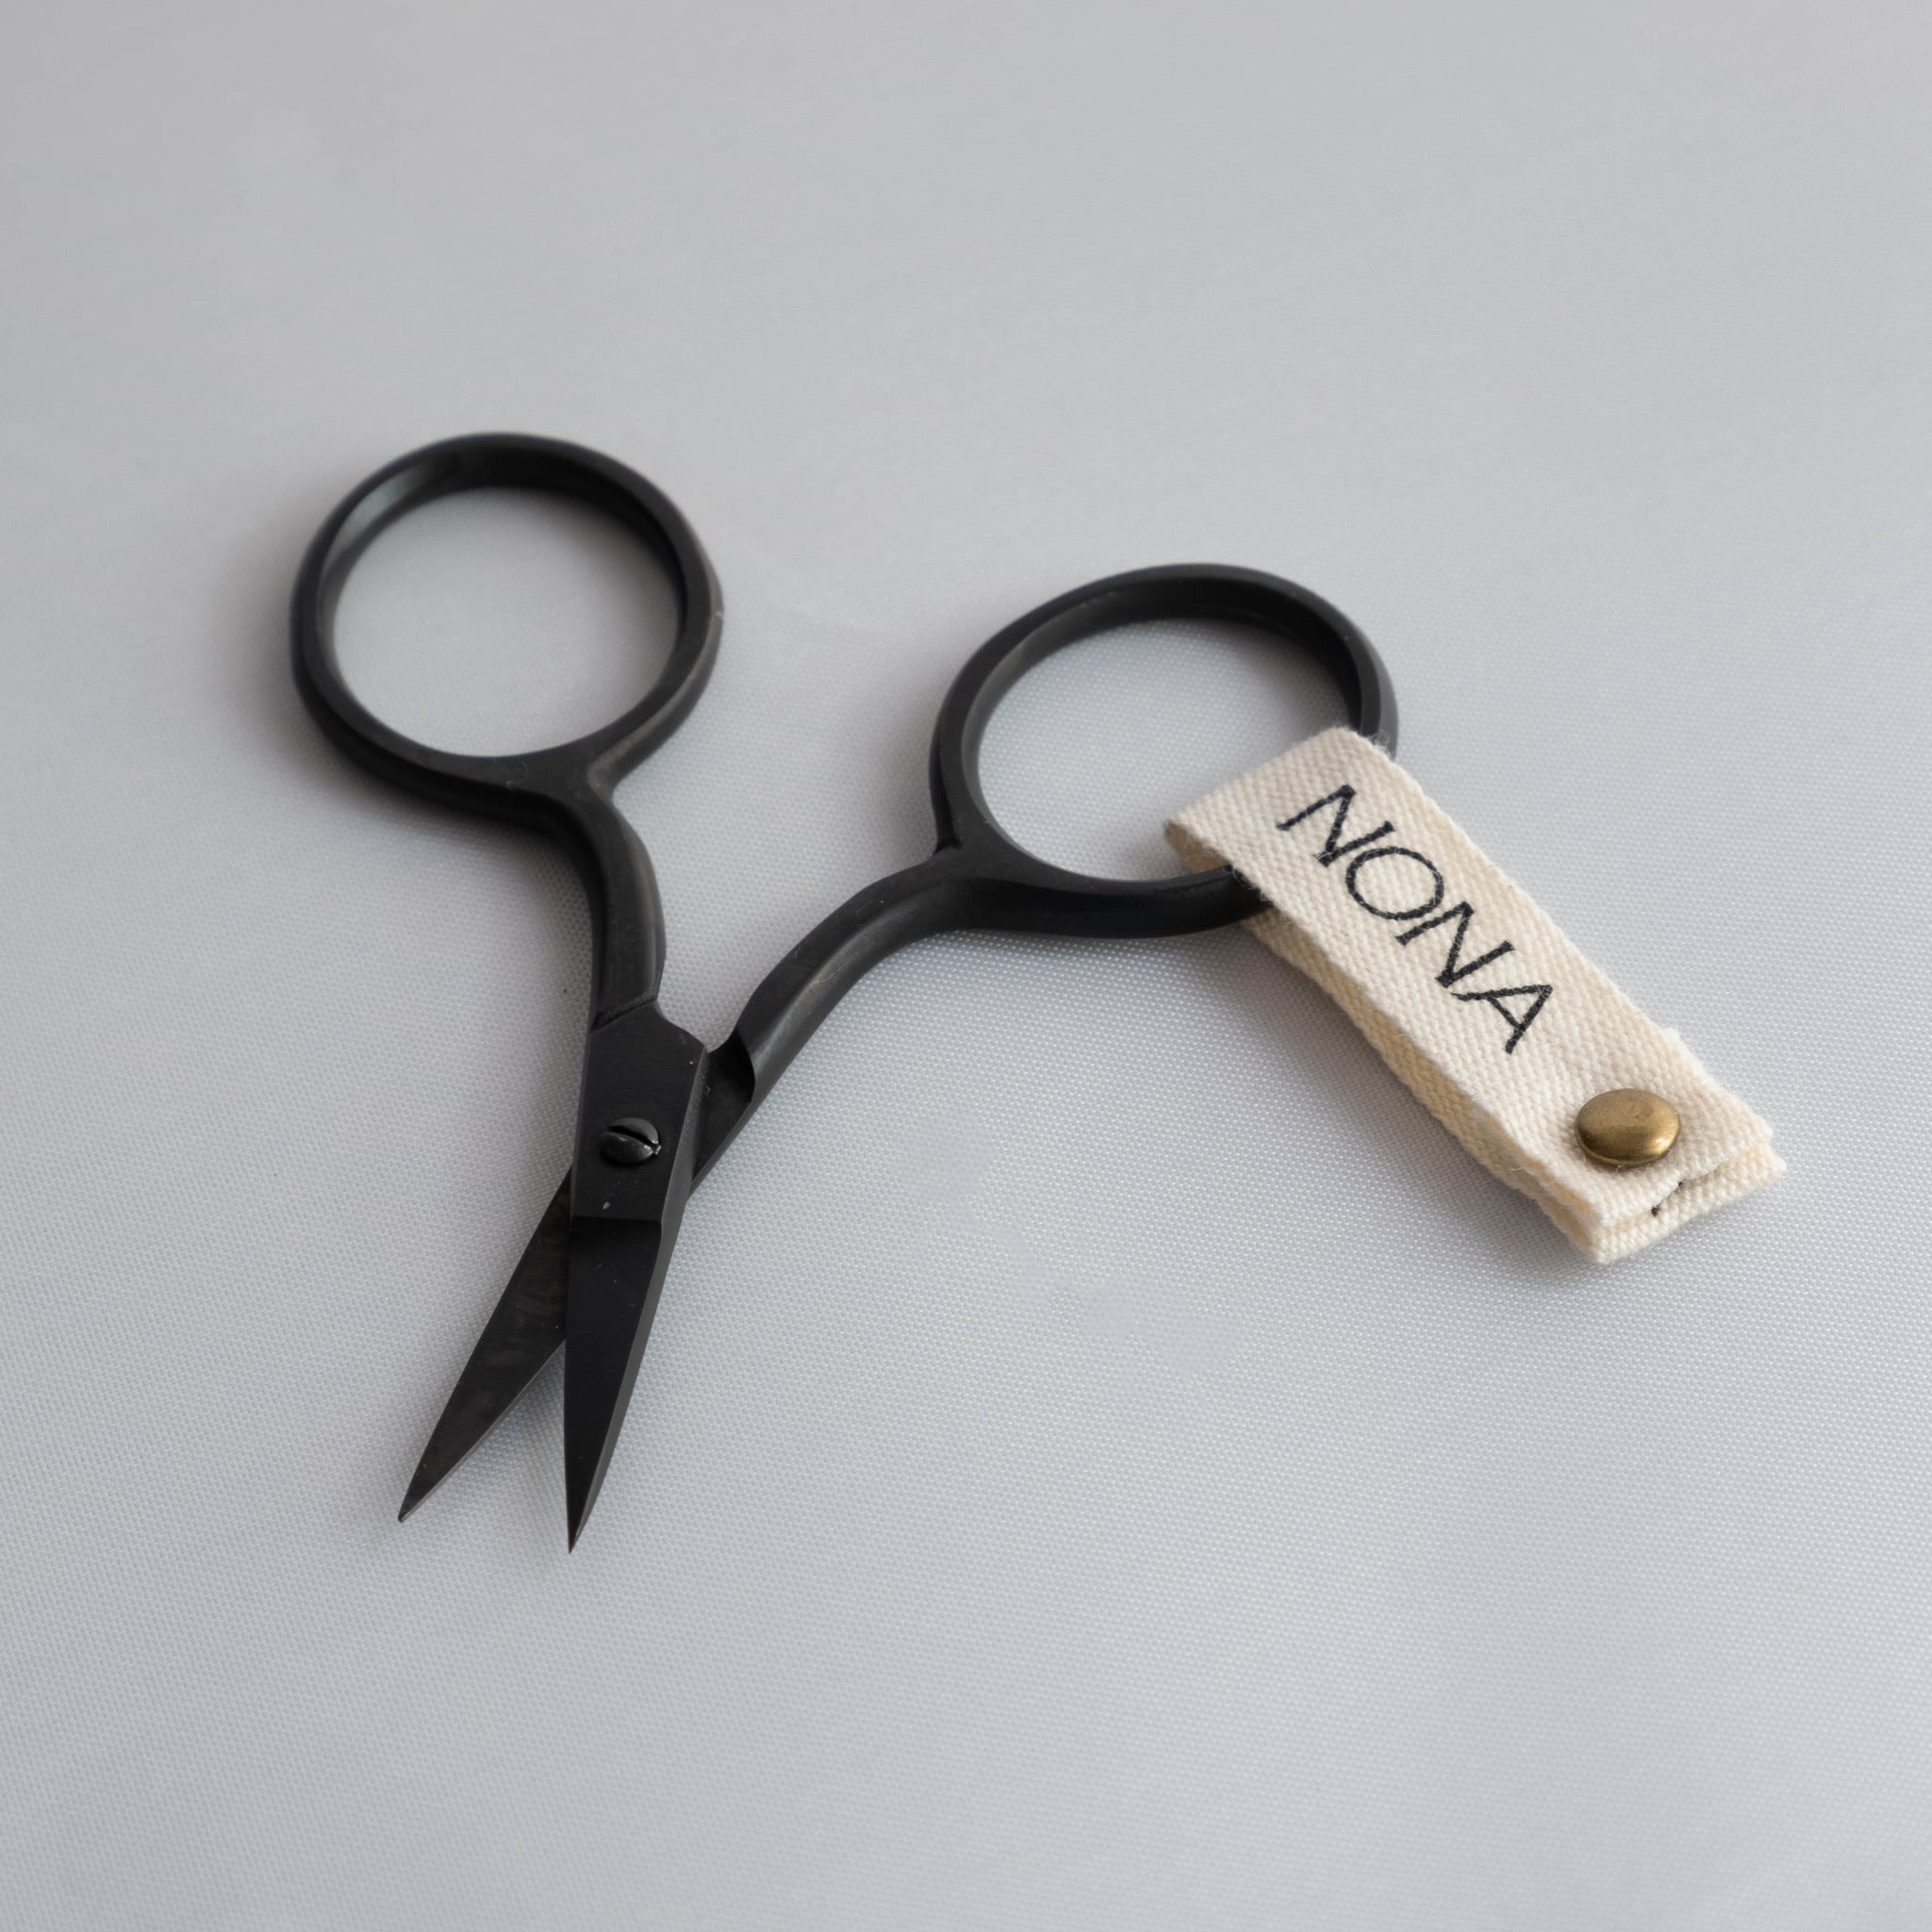 NONA Black Embroidery Mini Scissors